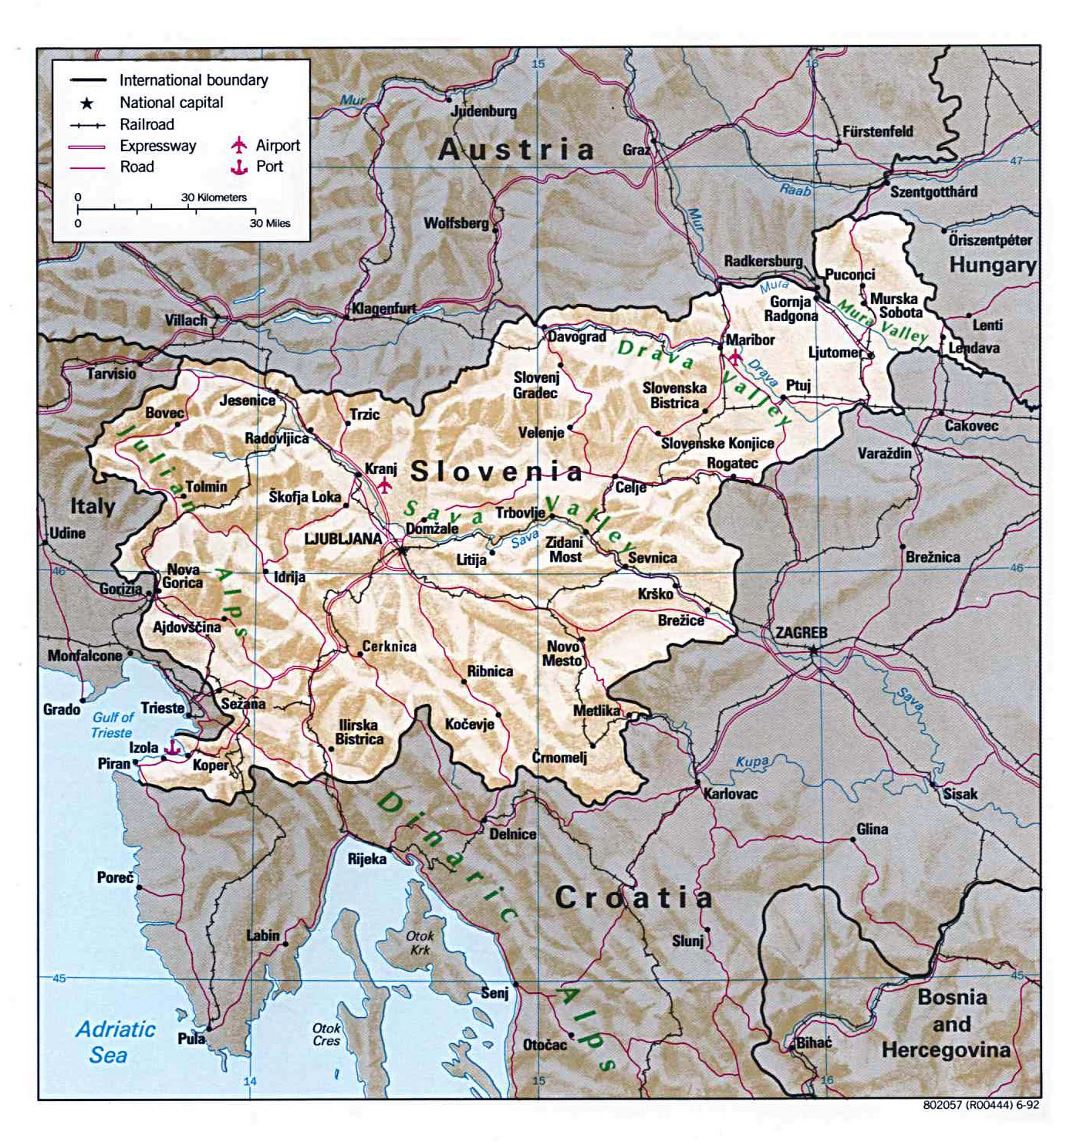 Grande detallado mapa político de Eslovenia con relieve, carreteras, ferrocarriles, ciudades principales, puertos y aeropuertos - 1992